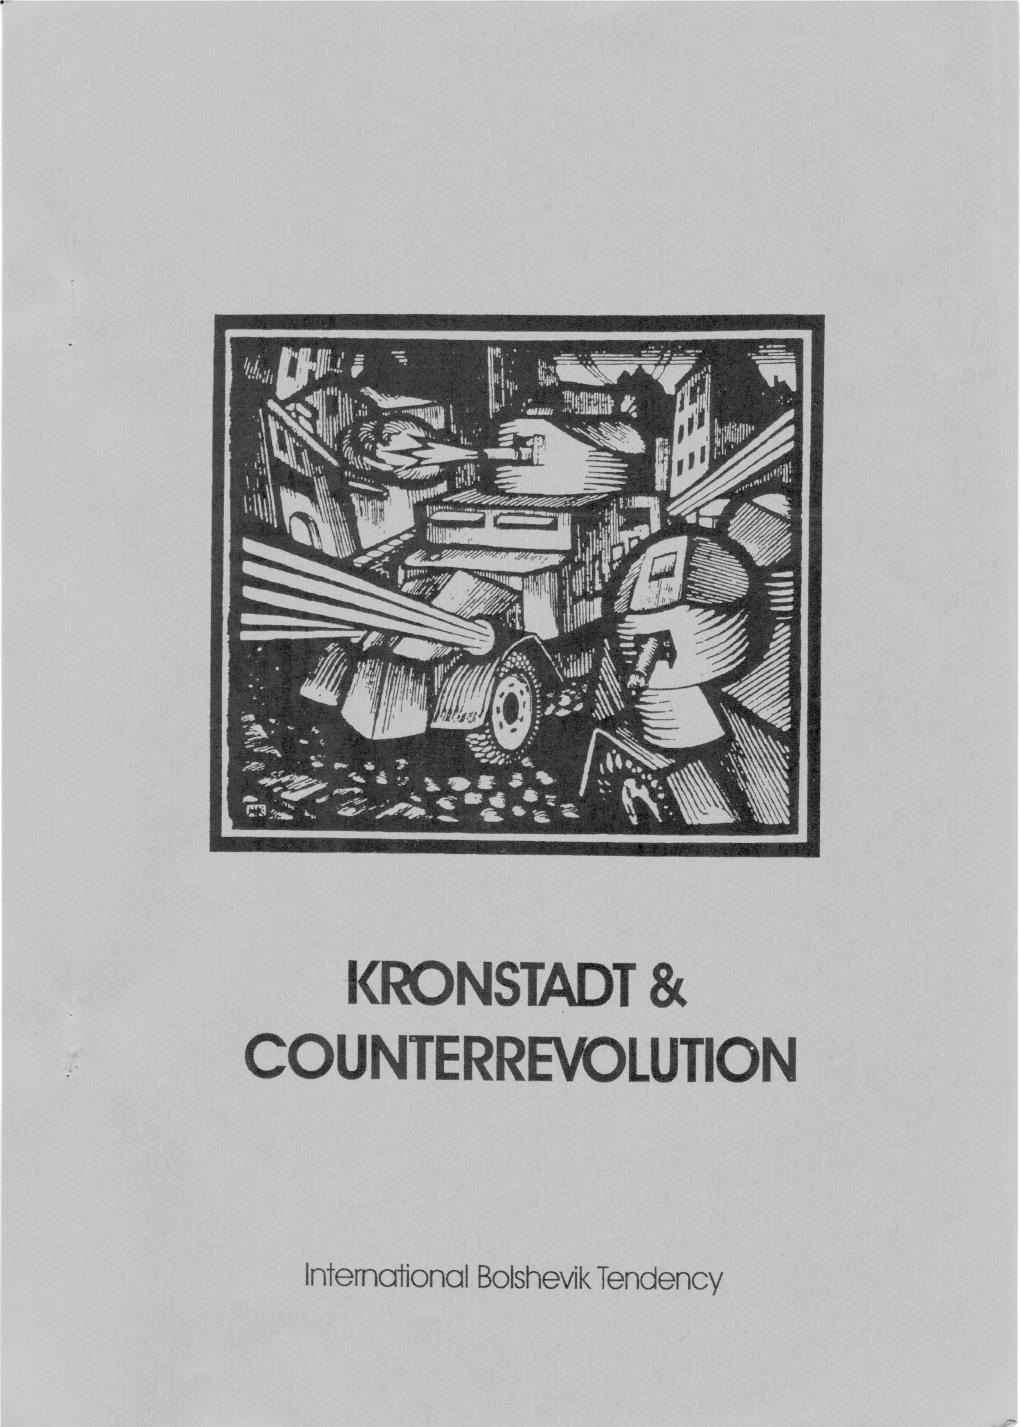 Kronstadt & Counterrevolution